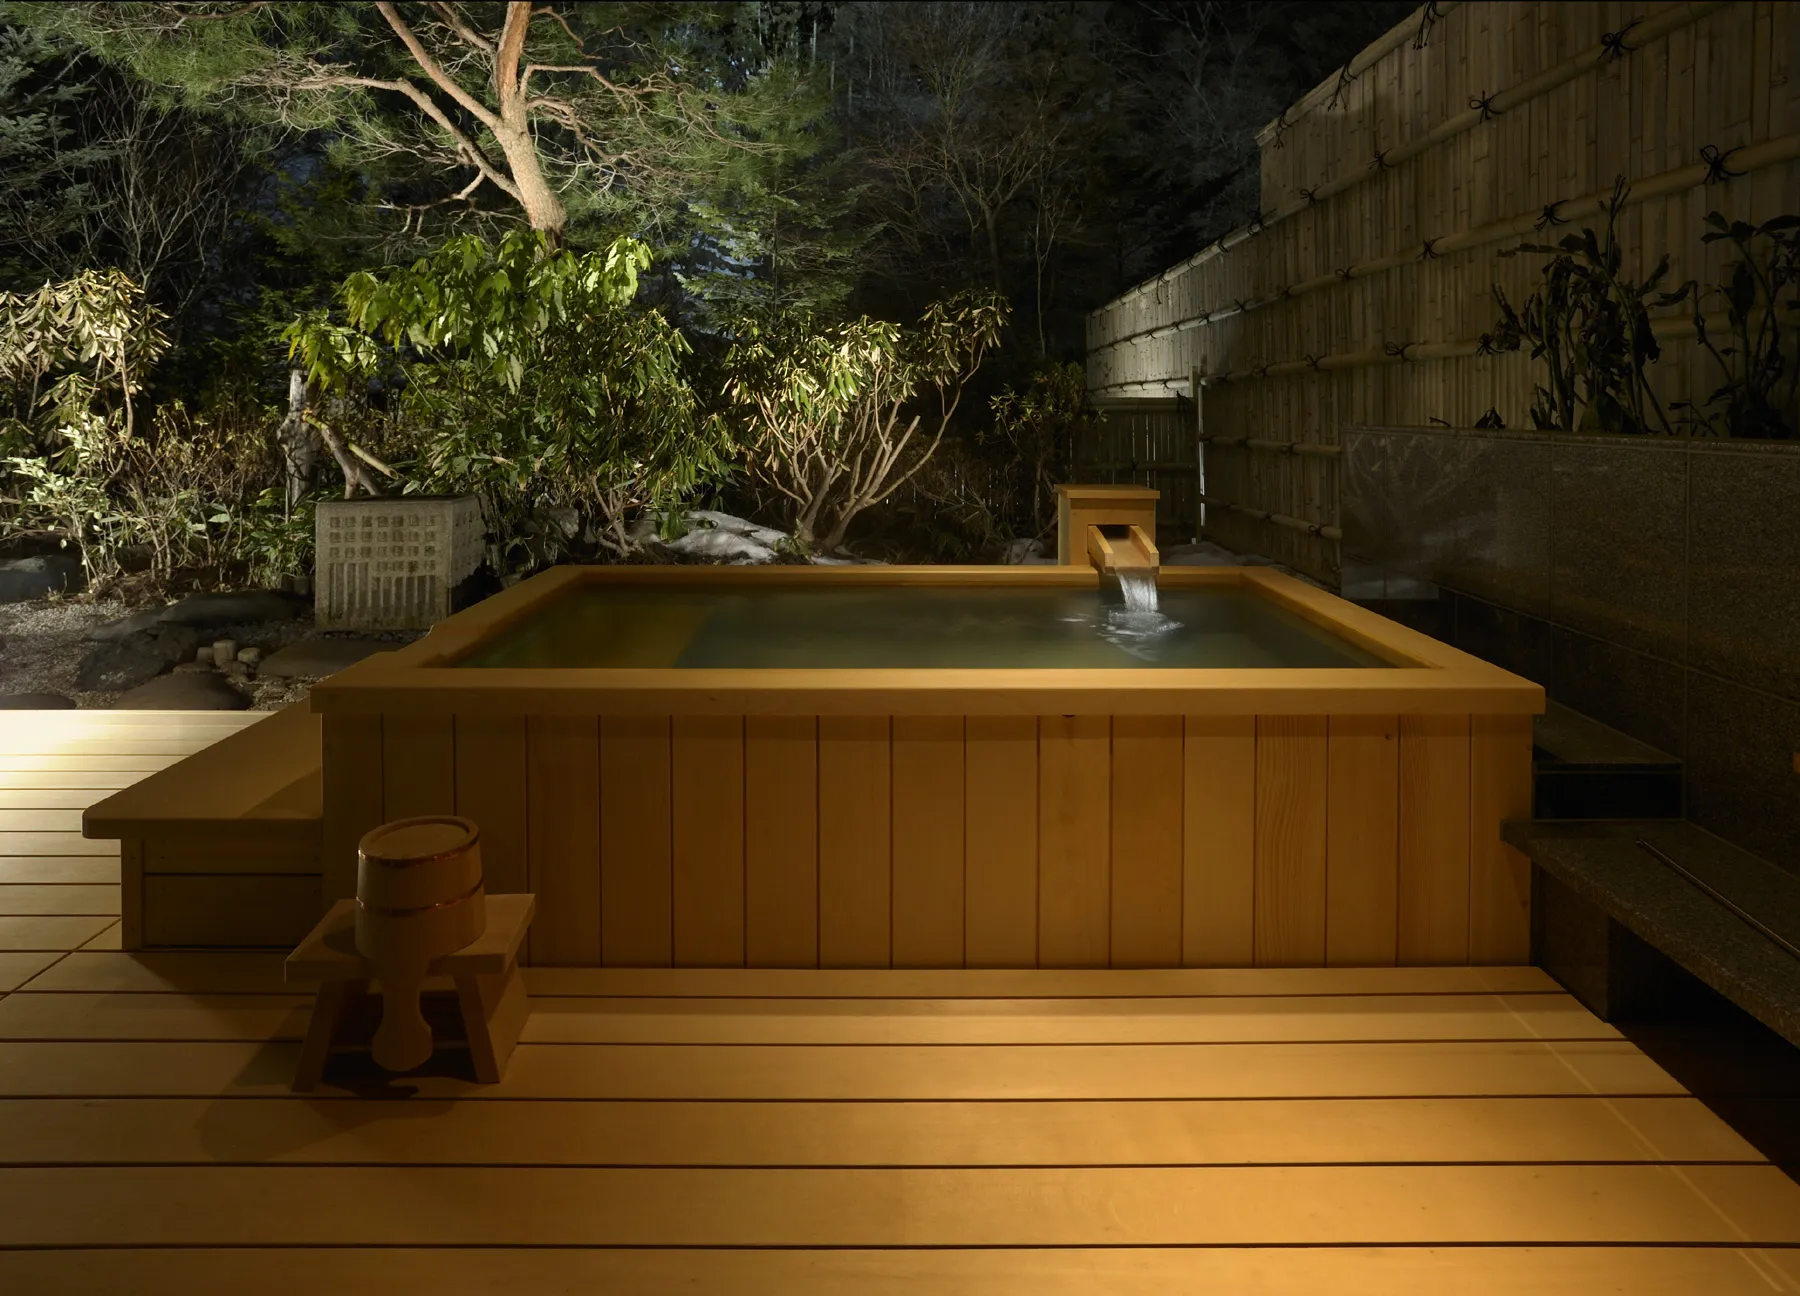 伊香保温泉で泊まりたい、自分時間を満喫できるおすすめ旅館5選